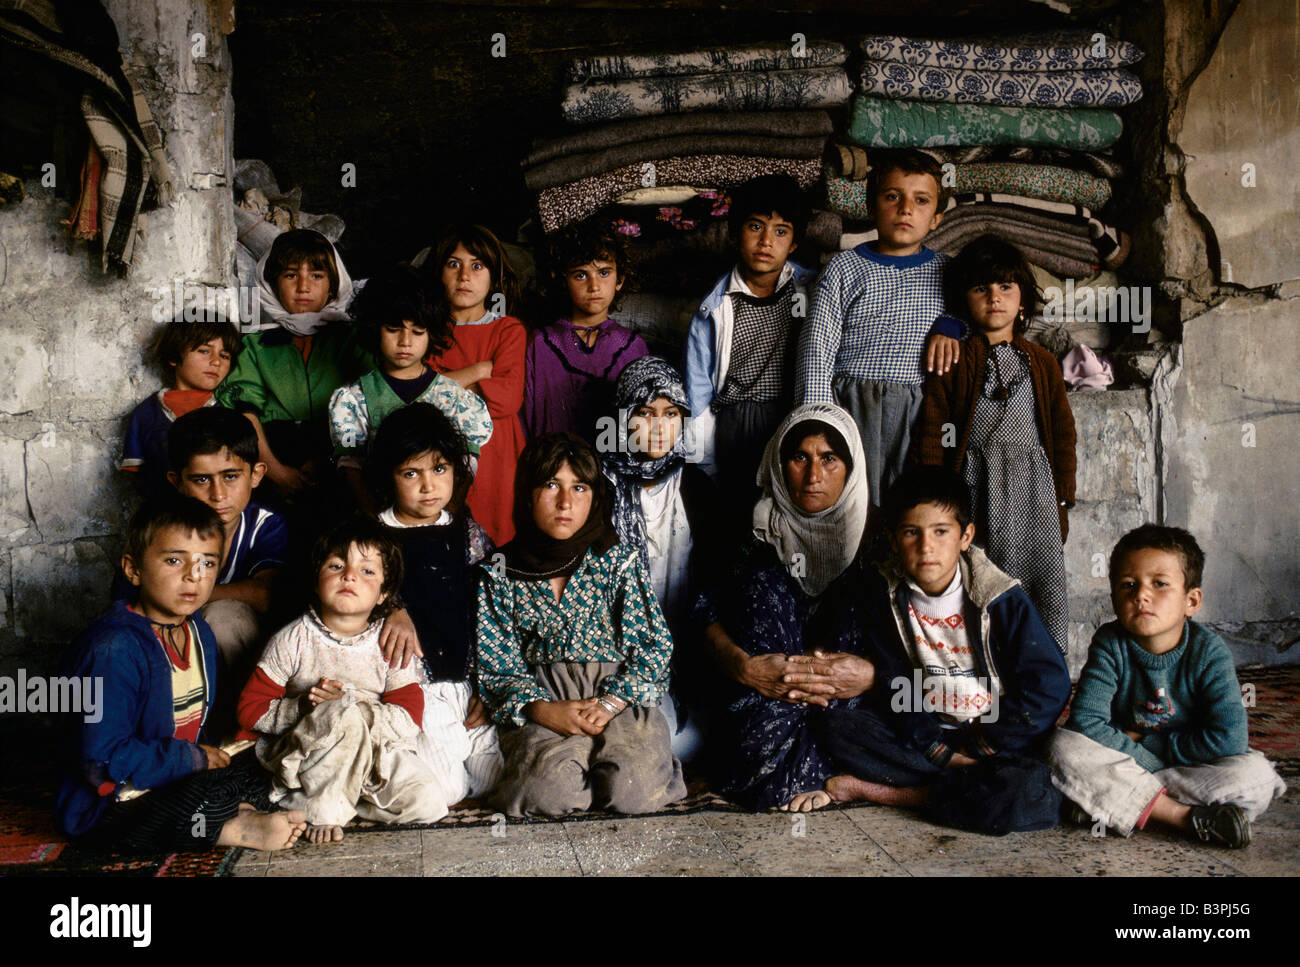 KURDISTAN', CHILDREN IN REMAINING PART OF BLOWN UP 2 STOREY BUILDING, PENJUIN, OCTOBER 1991. Stock Photo